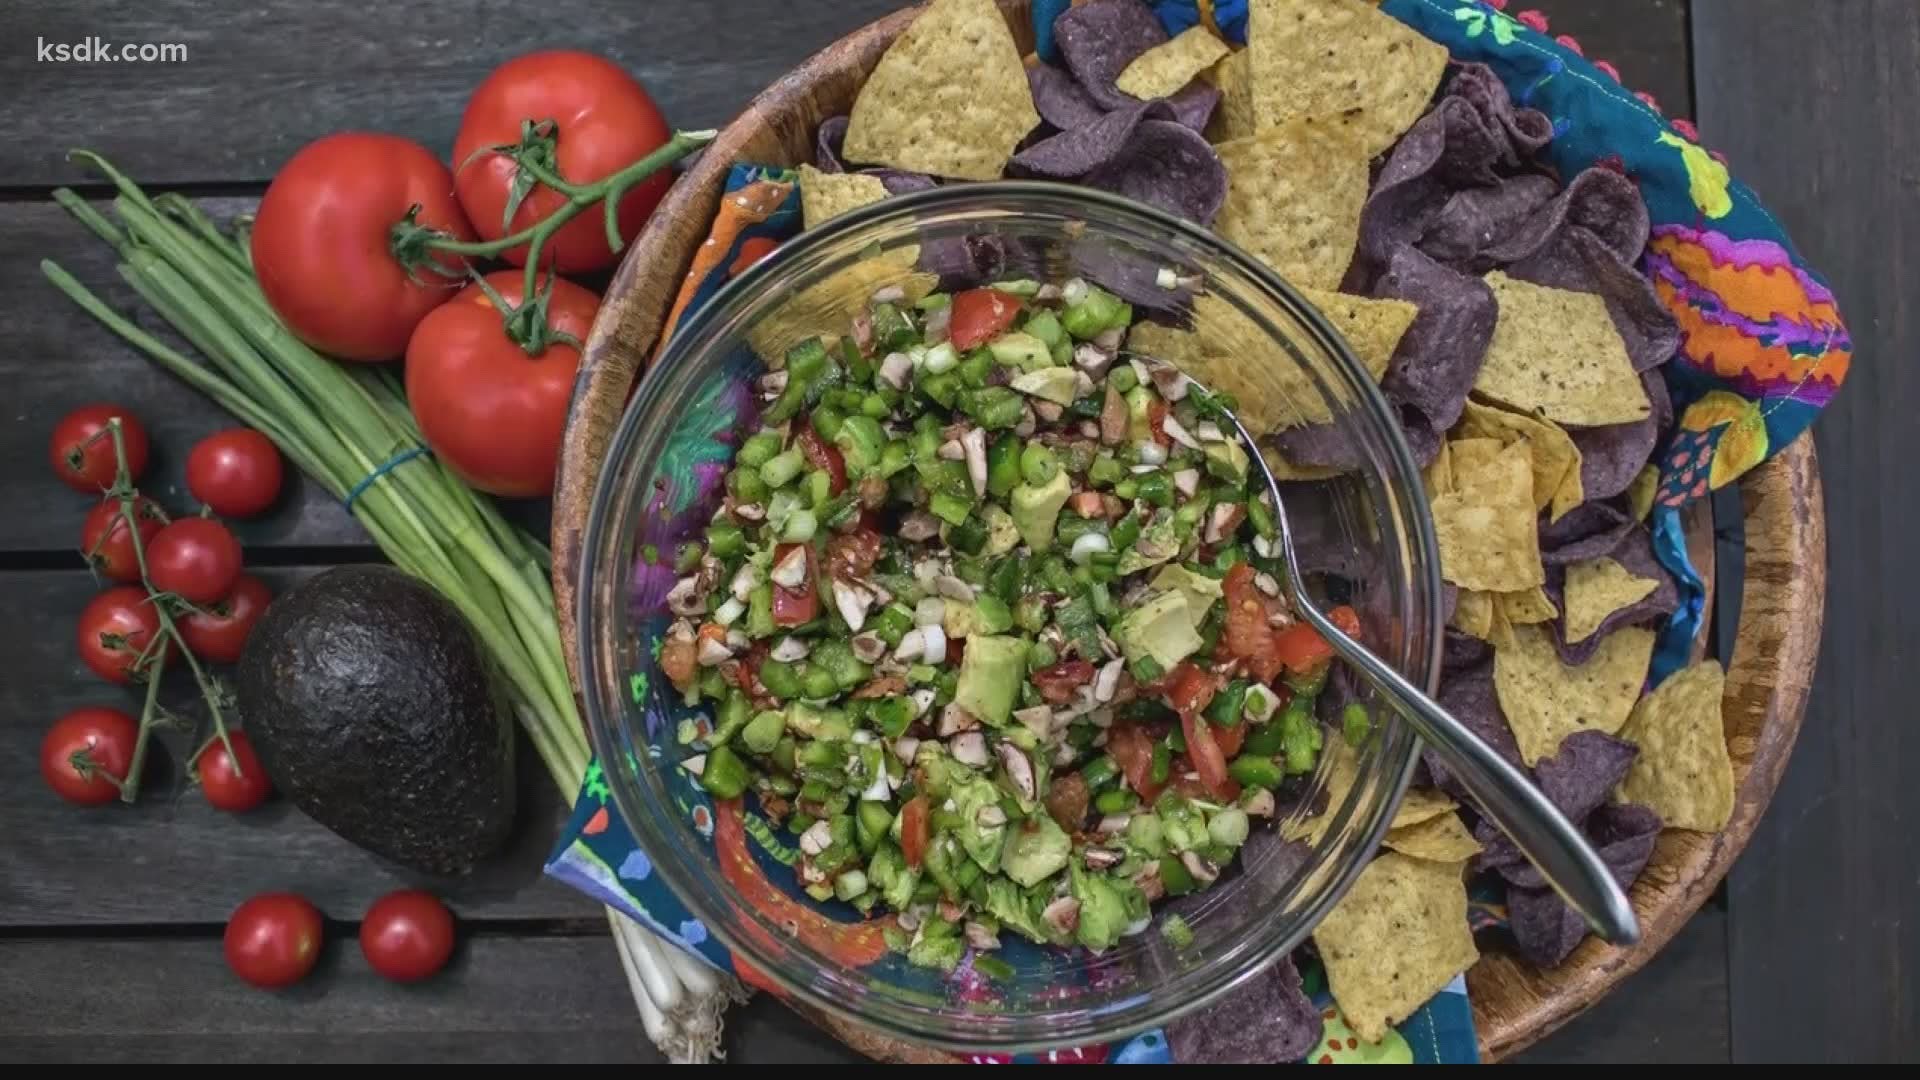 Photographer and cookbook author Heidi Drexler shares a recipe for Homemade Salsa.